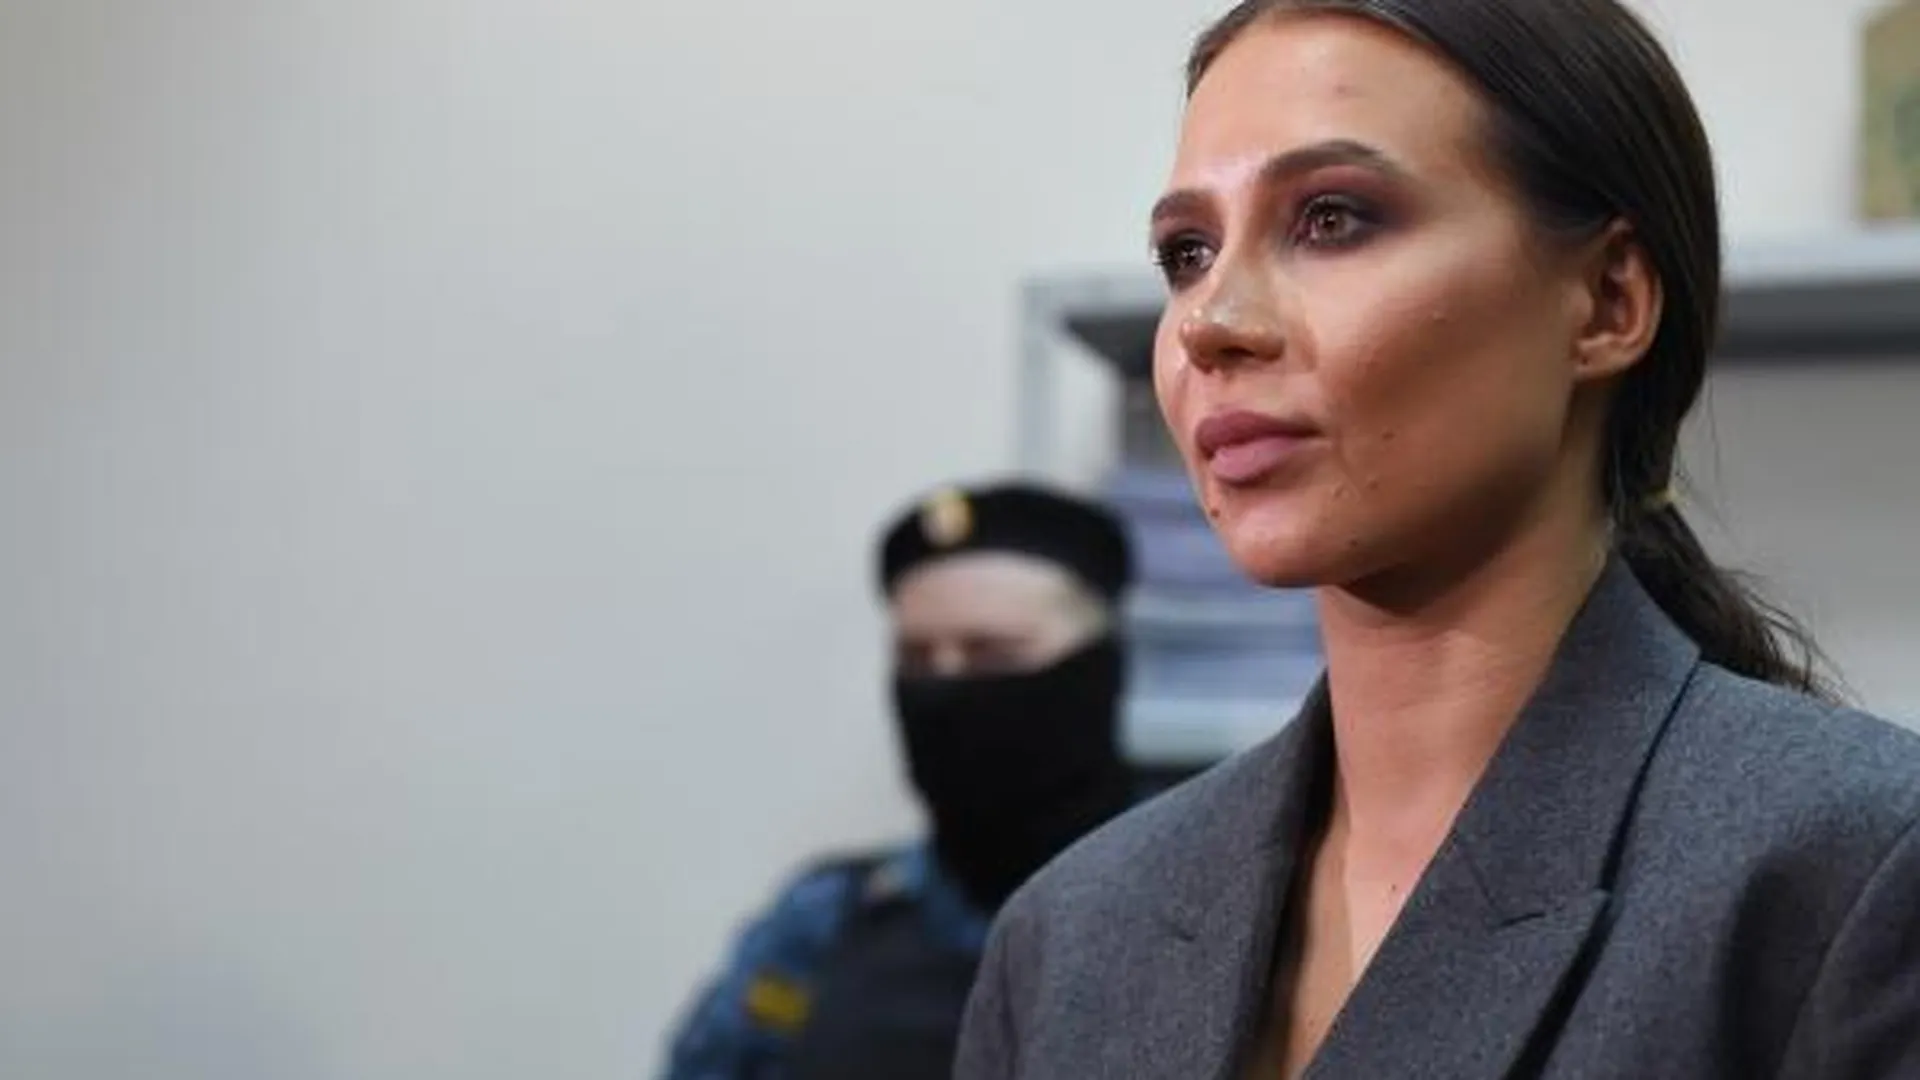 Блогер Валерия Чекалина, известная как Лерчек (Lerchek), в зале заседаний Савеловского суда Москвы, где ей изберут меру пресечения по делу об отмывании денег